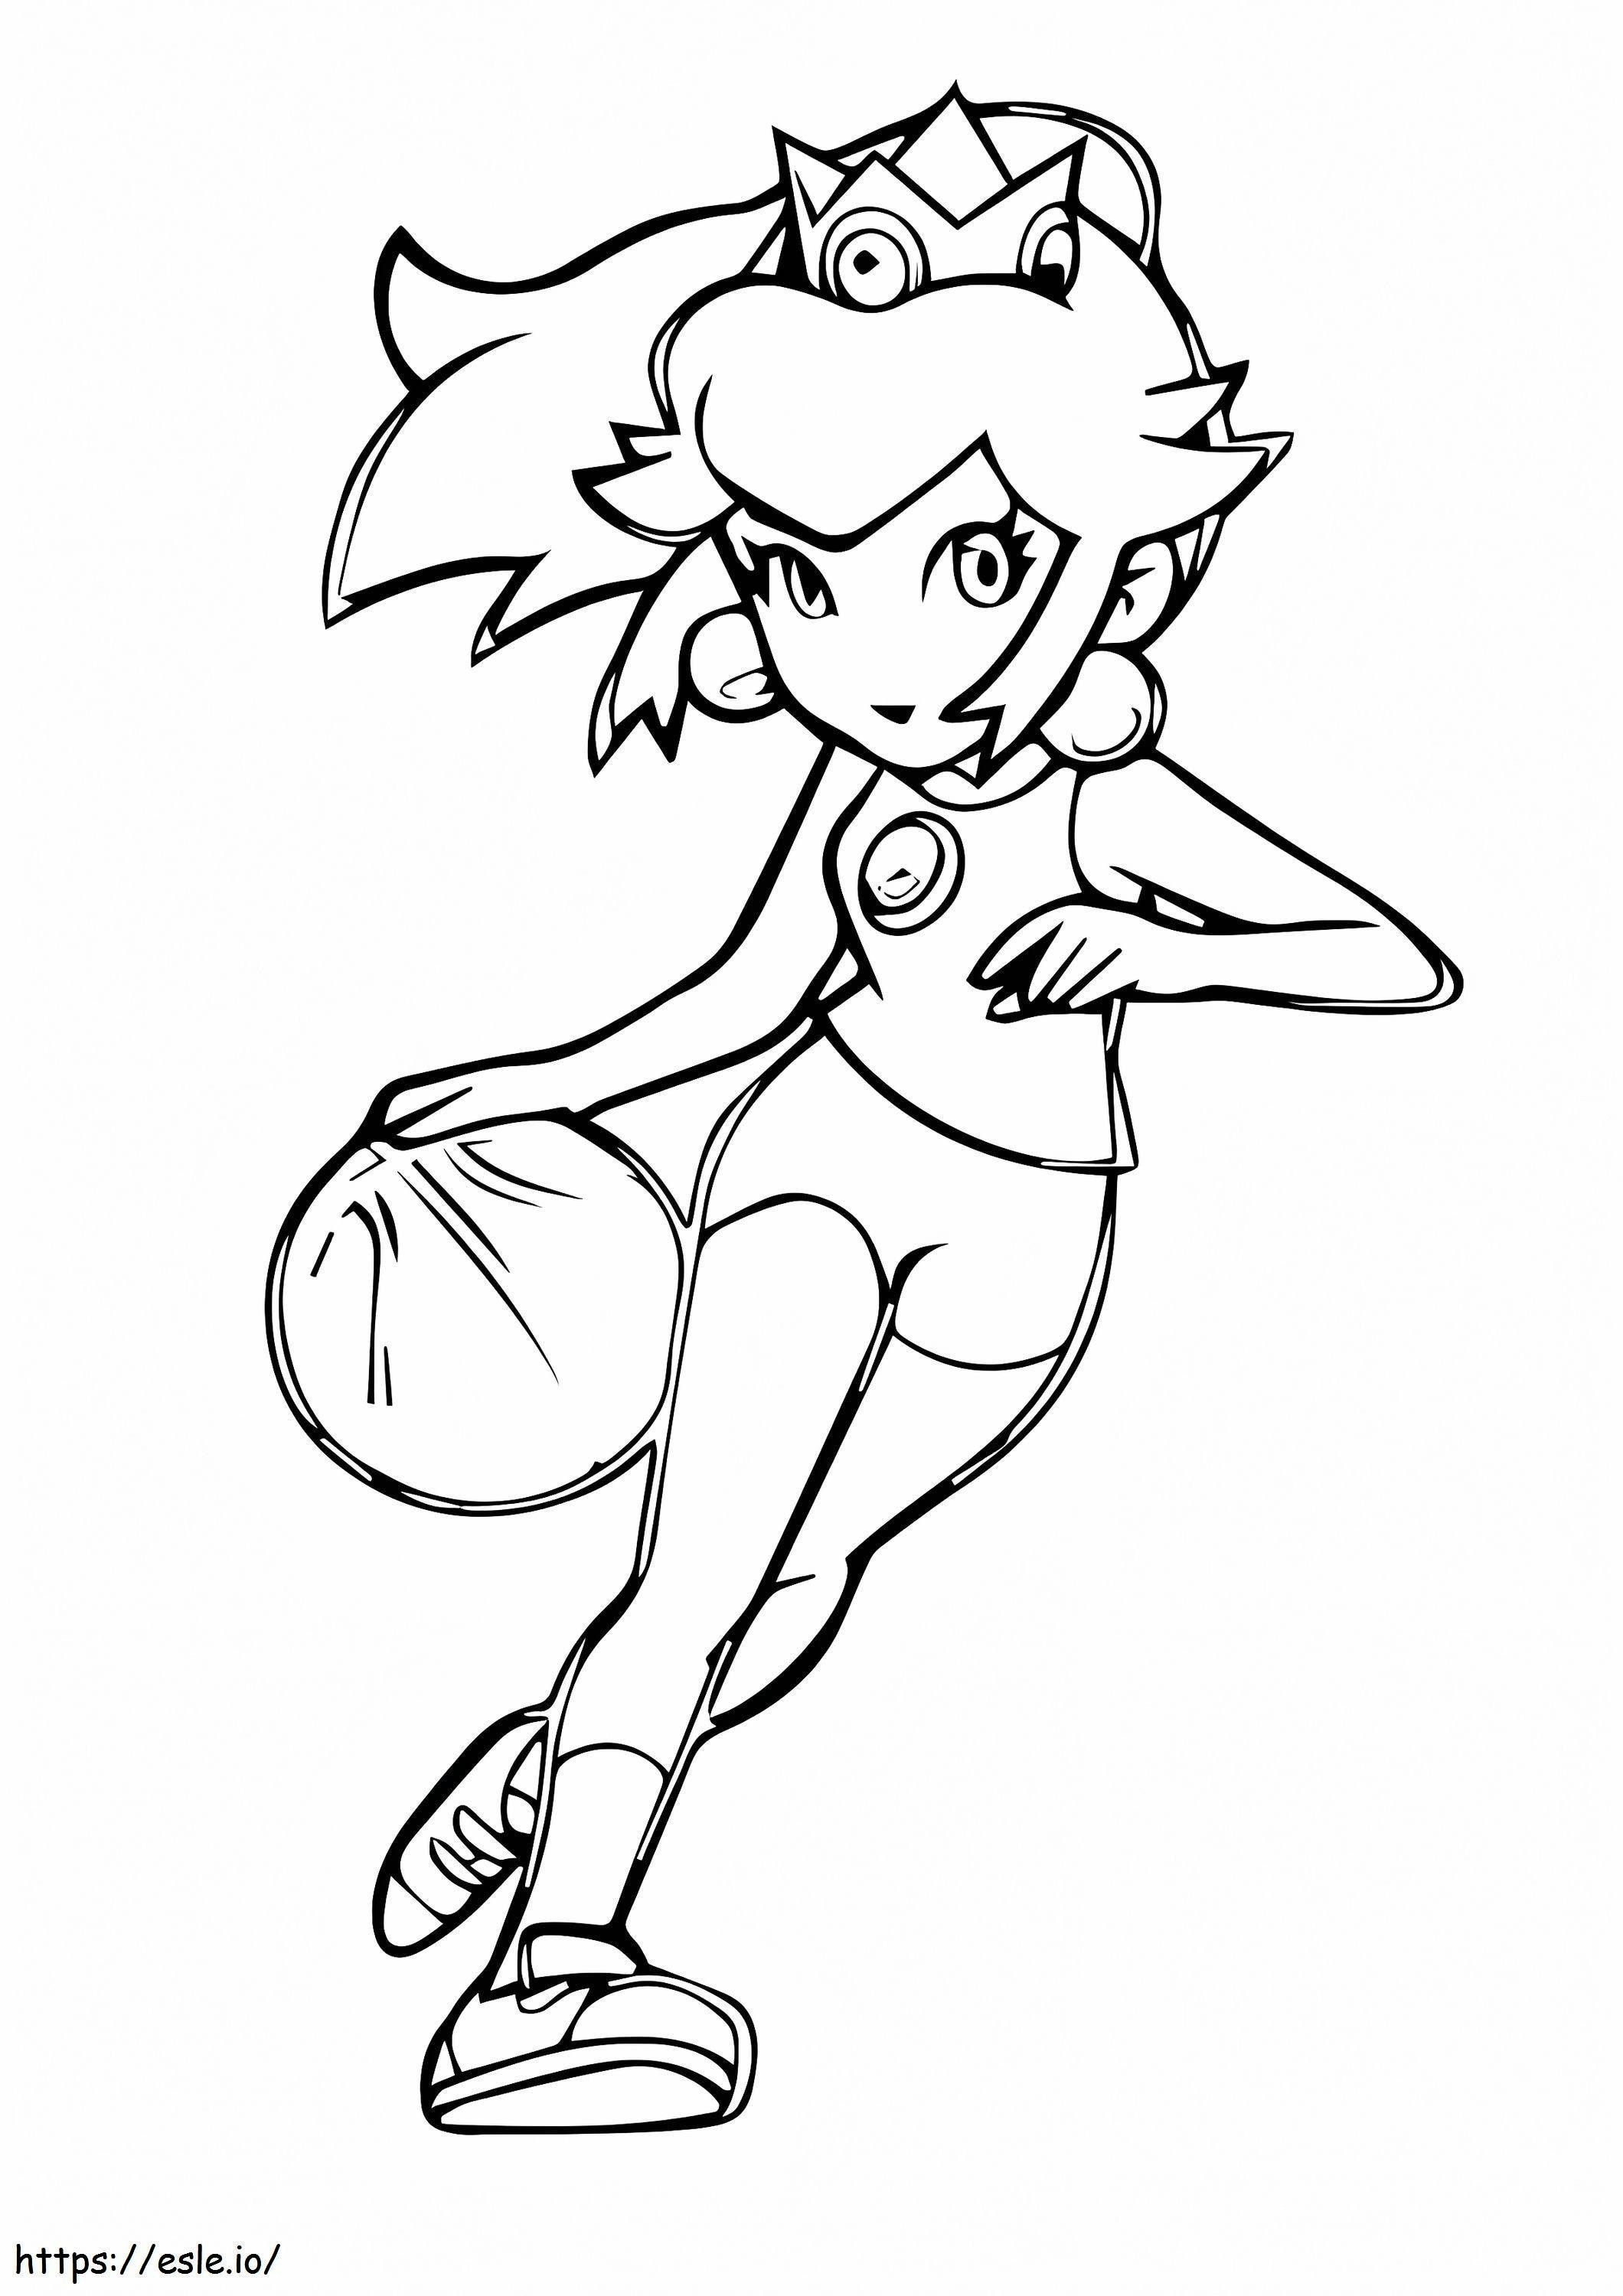 Prinsessa Peach pelaa koripalloa värityskuva